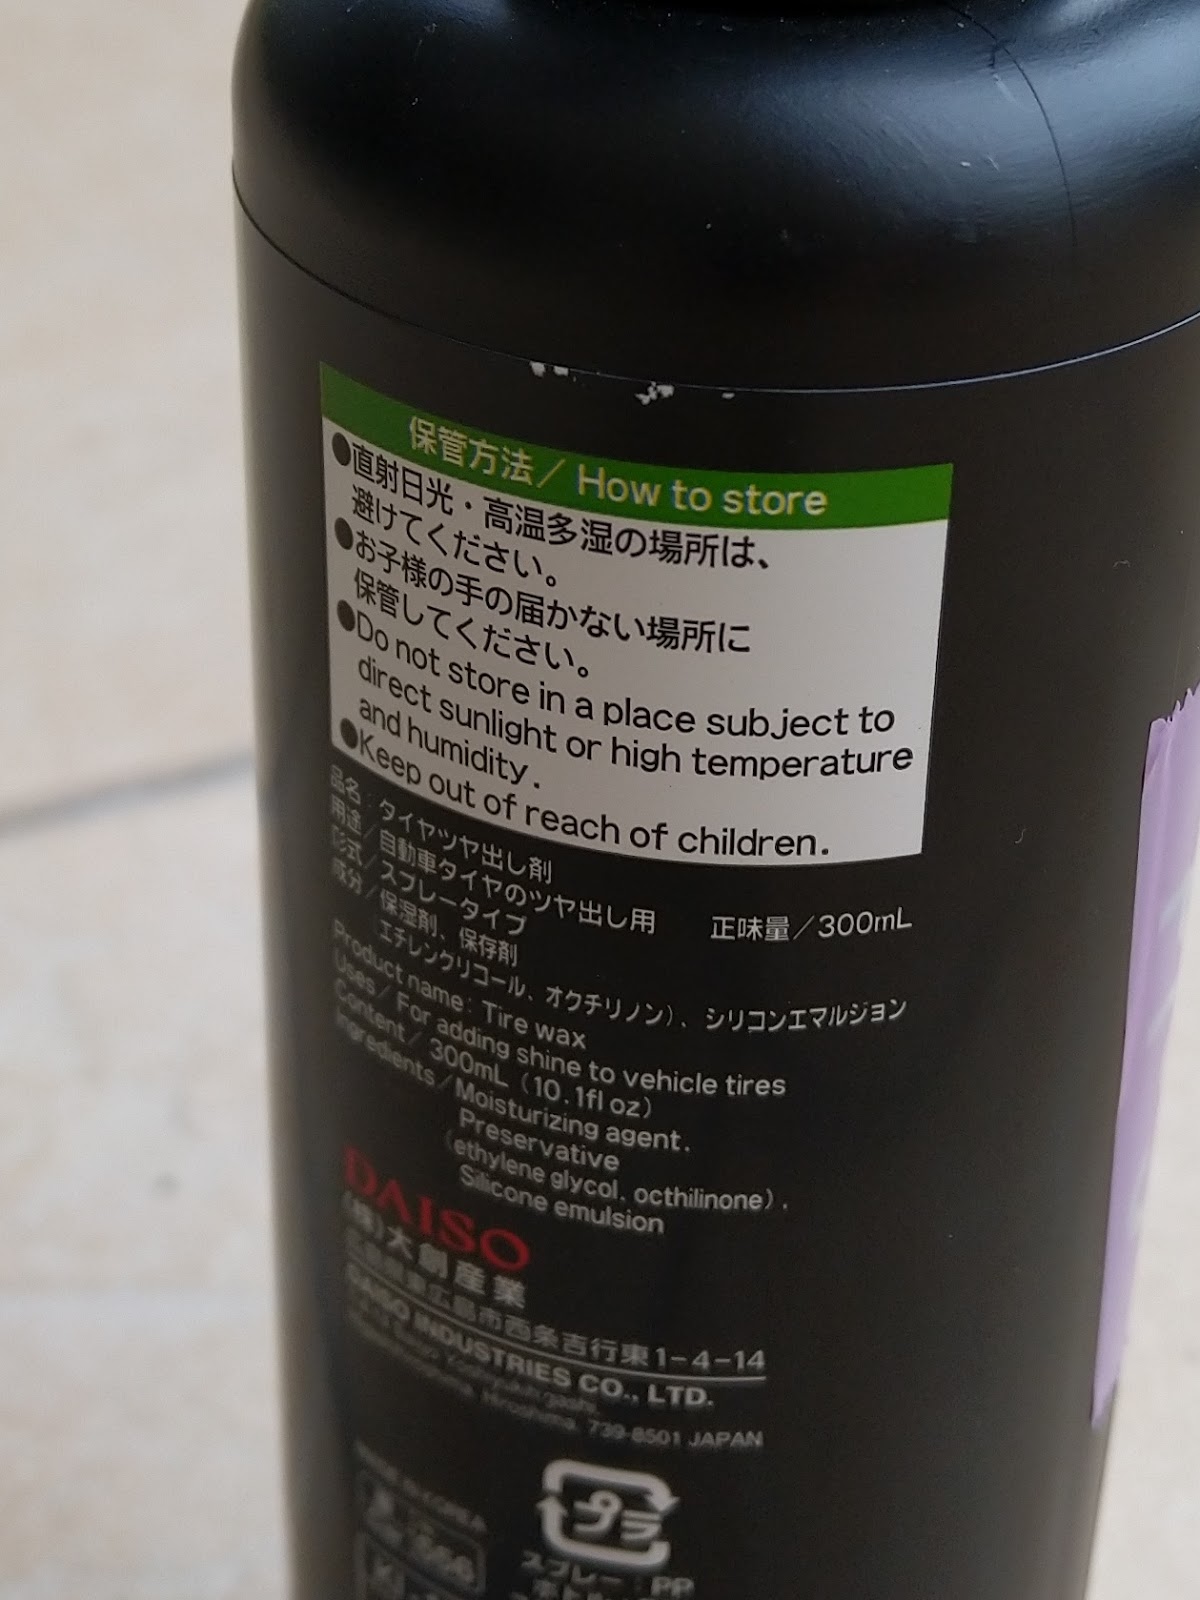 Car Porch Detailer: Quick Review of Soft99 Kiwami Extra Gloss Shampoo